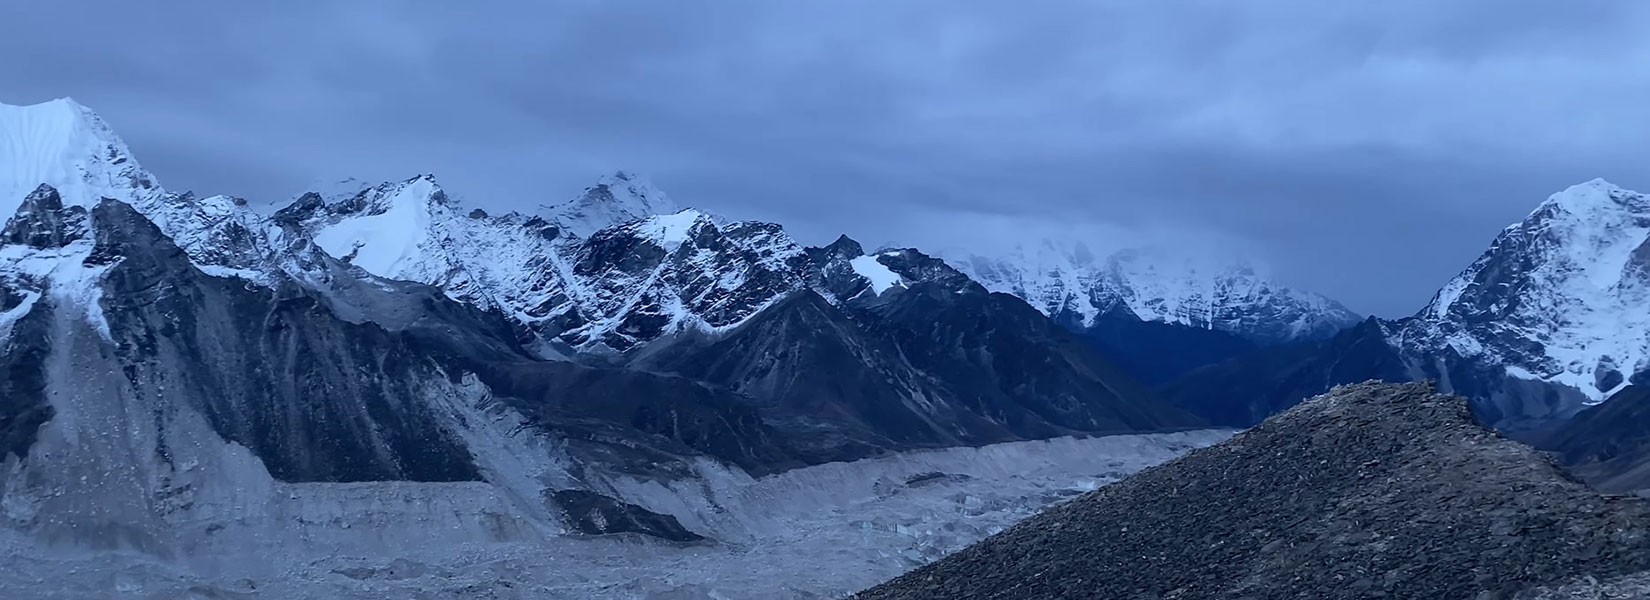 Everest Kala Patthar Trek Banner